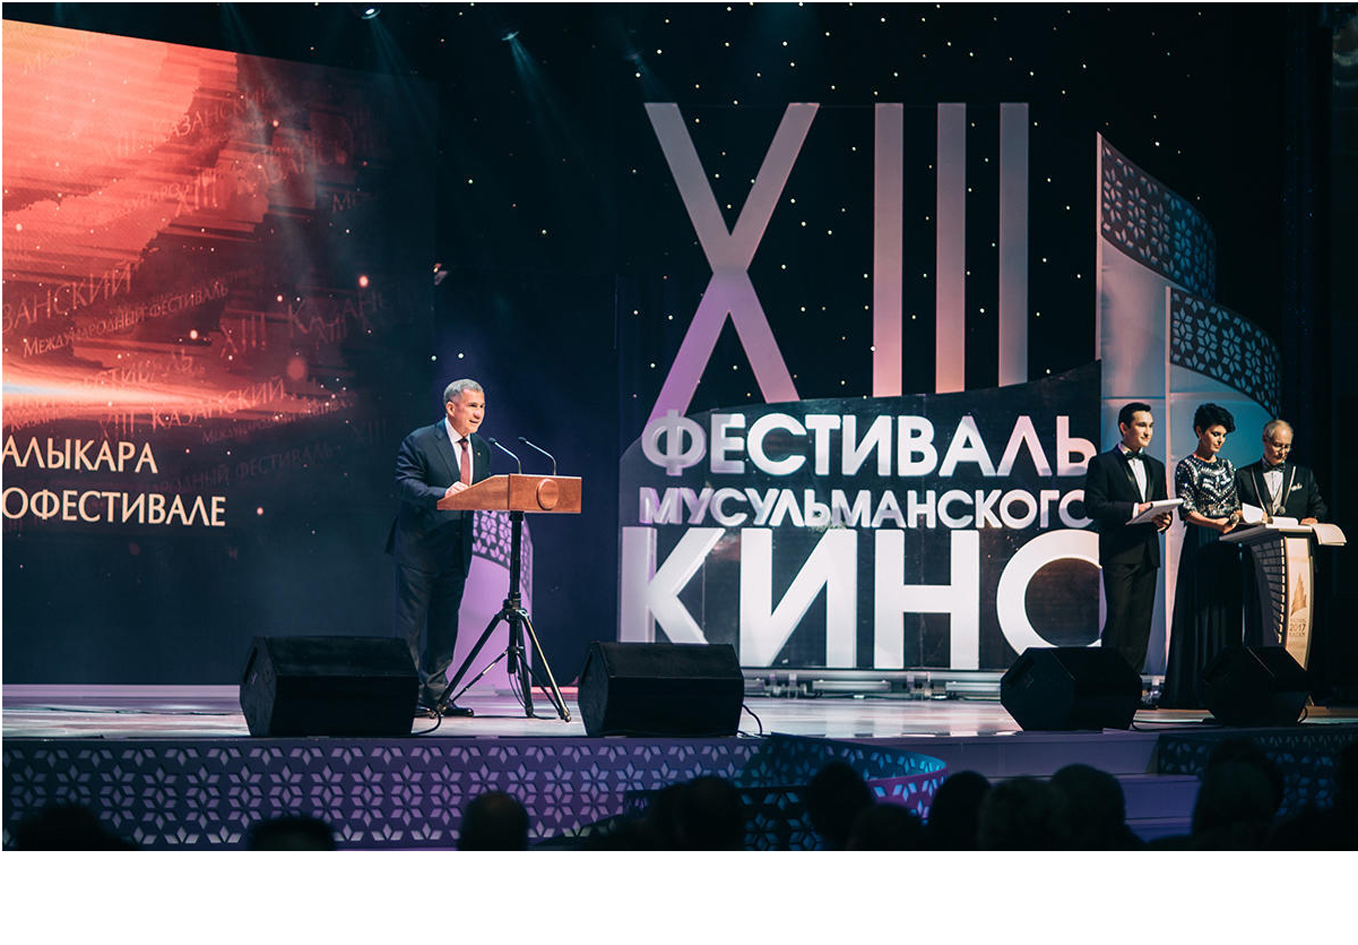 Азербайджанские фильмы представленына фестивале мусульманского кино в Казани